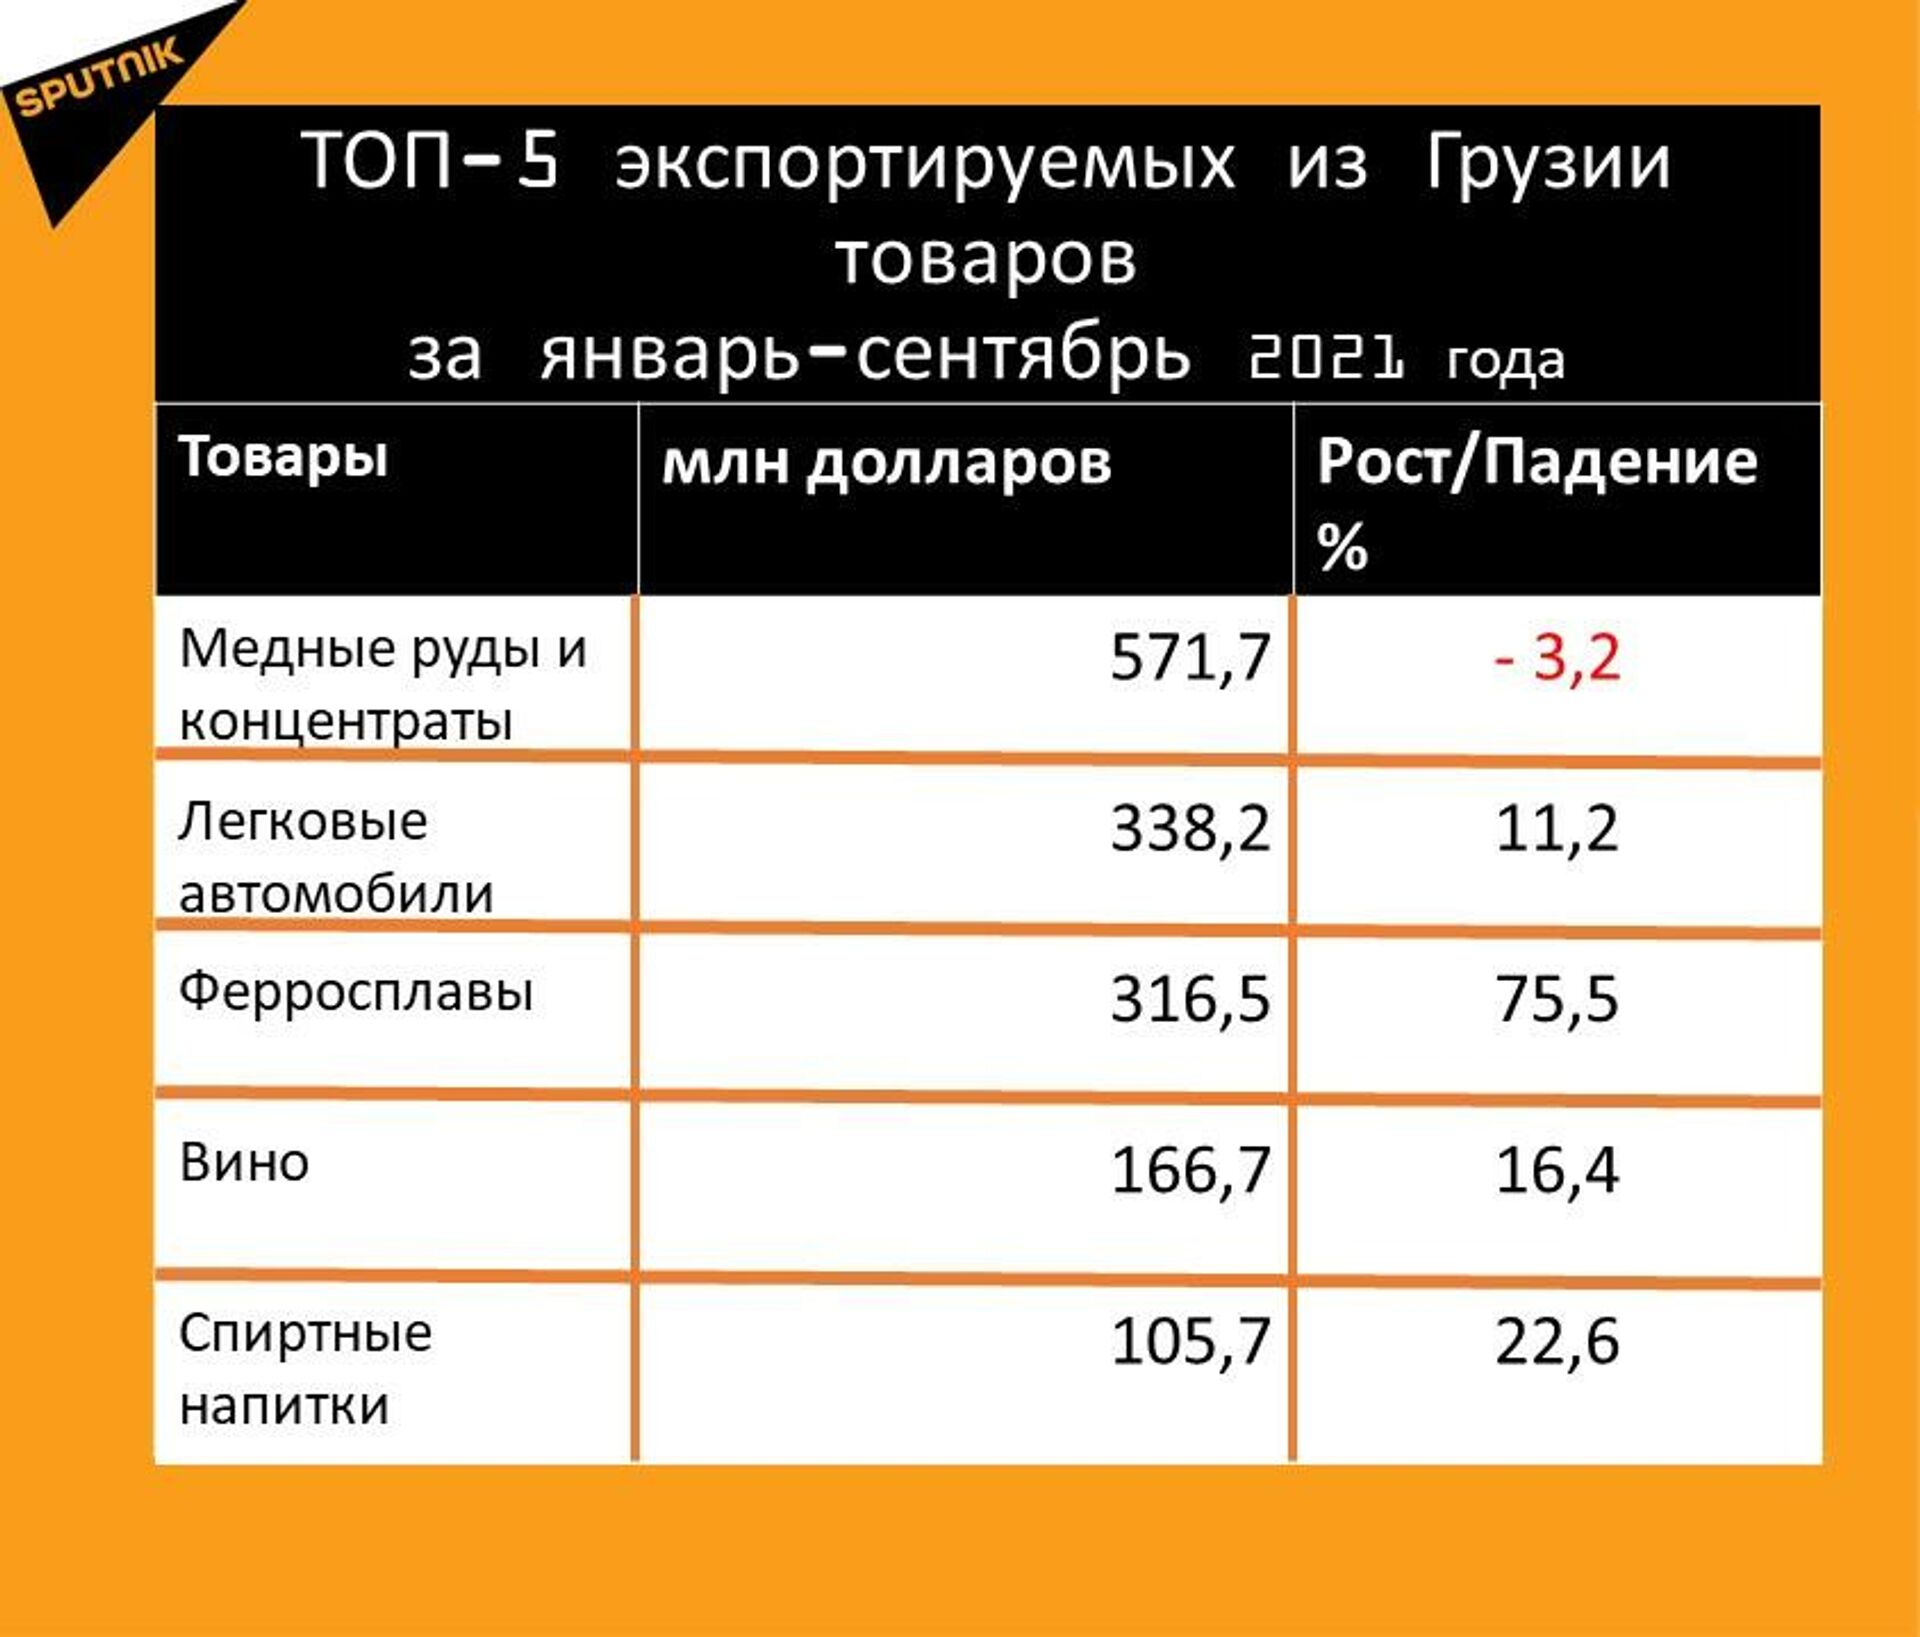 Статистика внешнеторгового оборота Грузии за январь-сентябрь 2021 года, экспорт - Sputnik Грузия, 1920, 20.10.2021